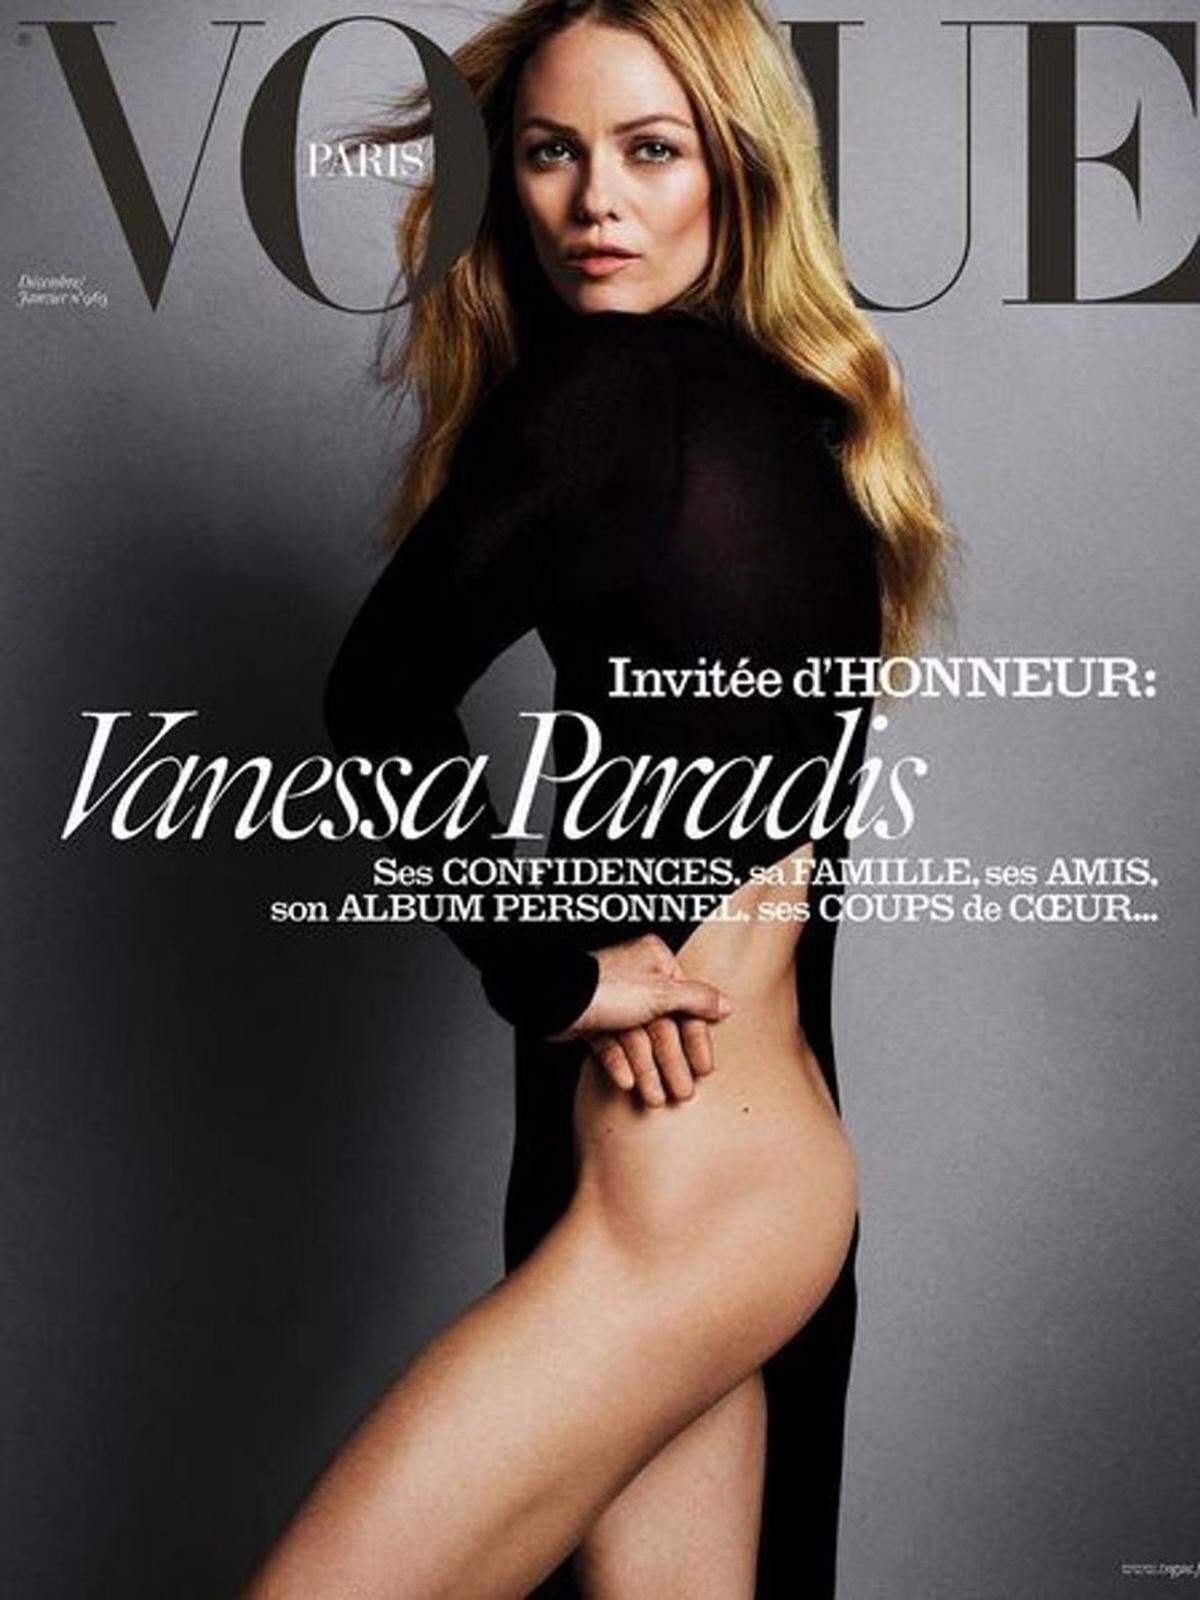 Das Cover der Weihnachtsausgabe der französischen "Vogue" fällt alles andere als üppig aus. Vanessa Paradis ist darauf halbnackt und sehr dünn zu sehen. Die Rippen sind stark zu sehen und auch die Hüfte des Chanel-Testimonials tritt sehr stark hervor.